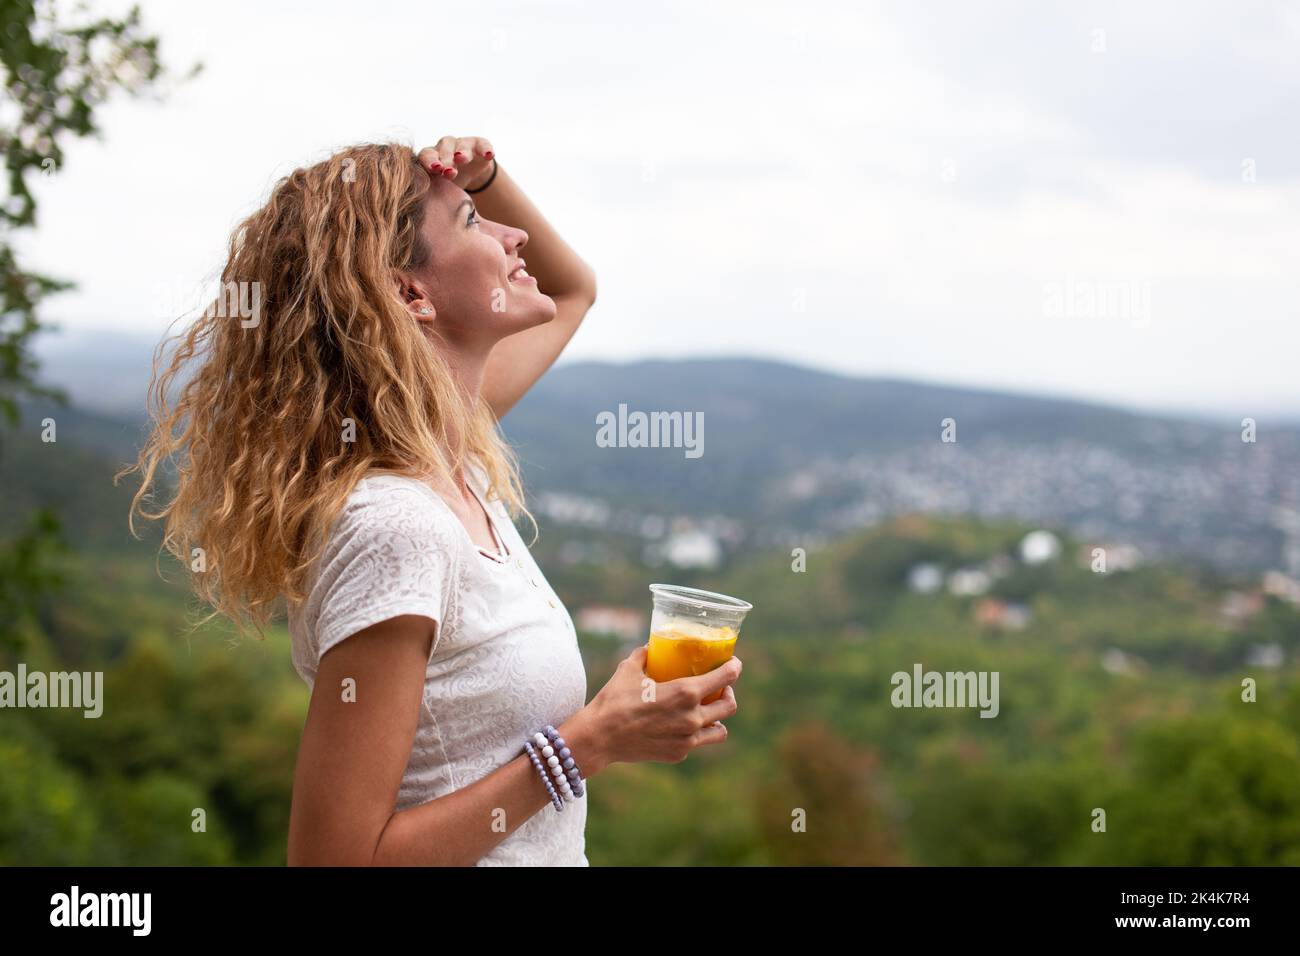 Junge kaukasische 30s Frau mit lockigen Haaren Blick auf den Himmel im Freien Stockfoto